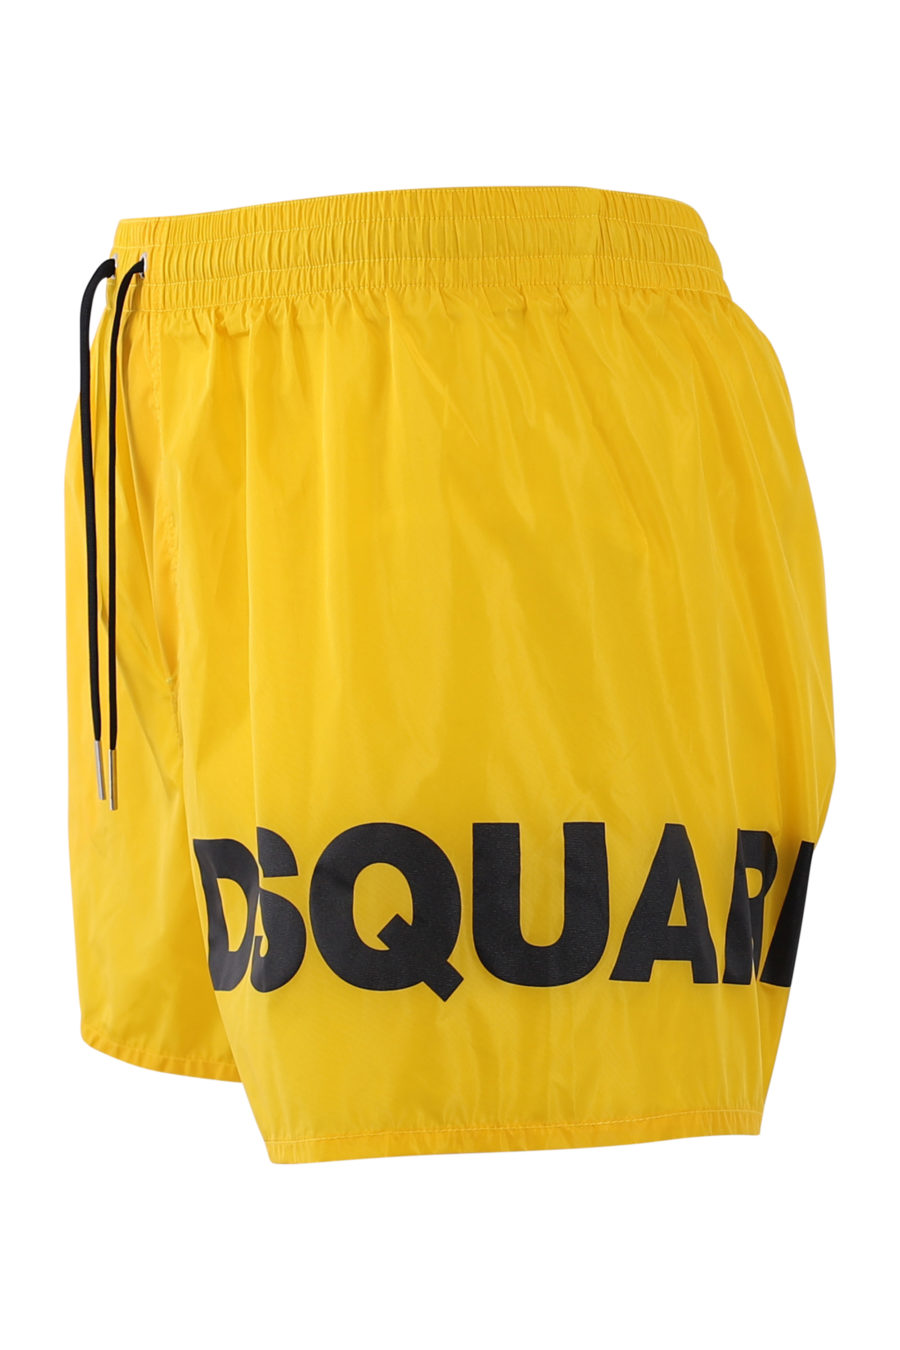 Bañador midi amarillo con logo negro lateral - IMG 6900